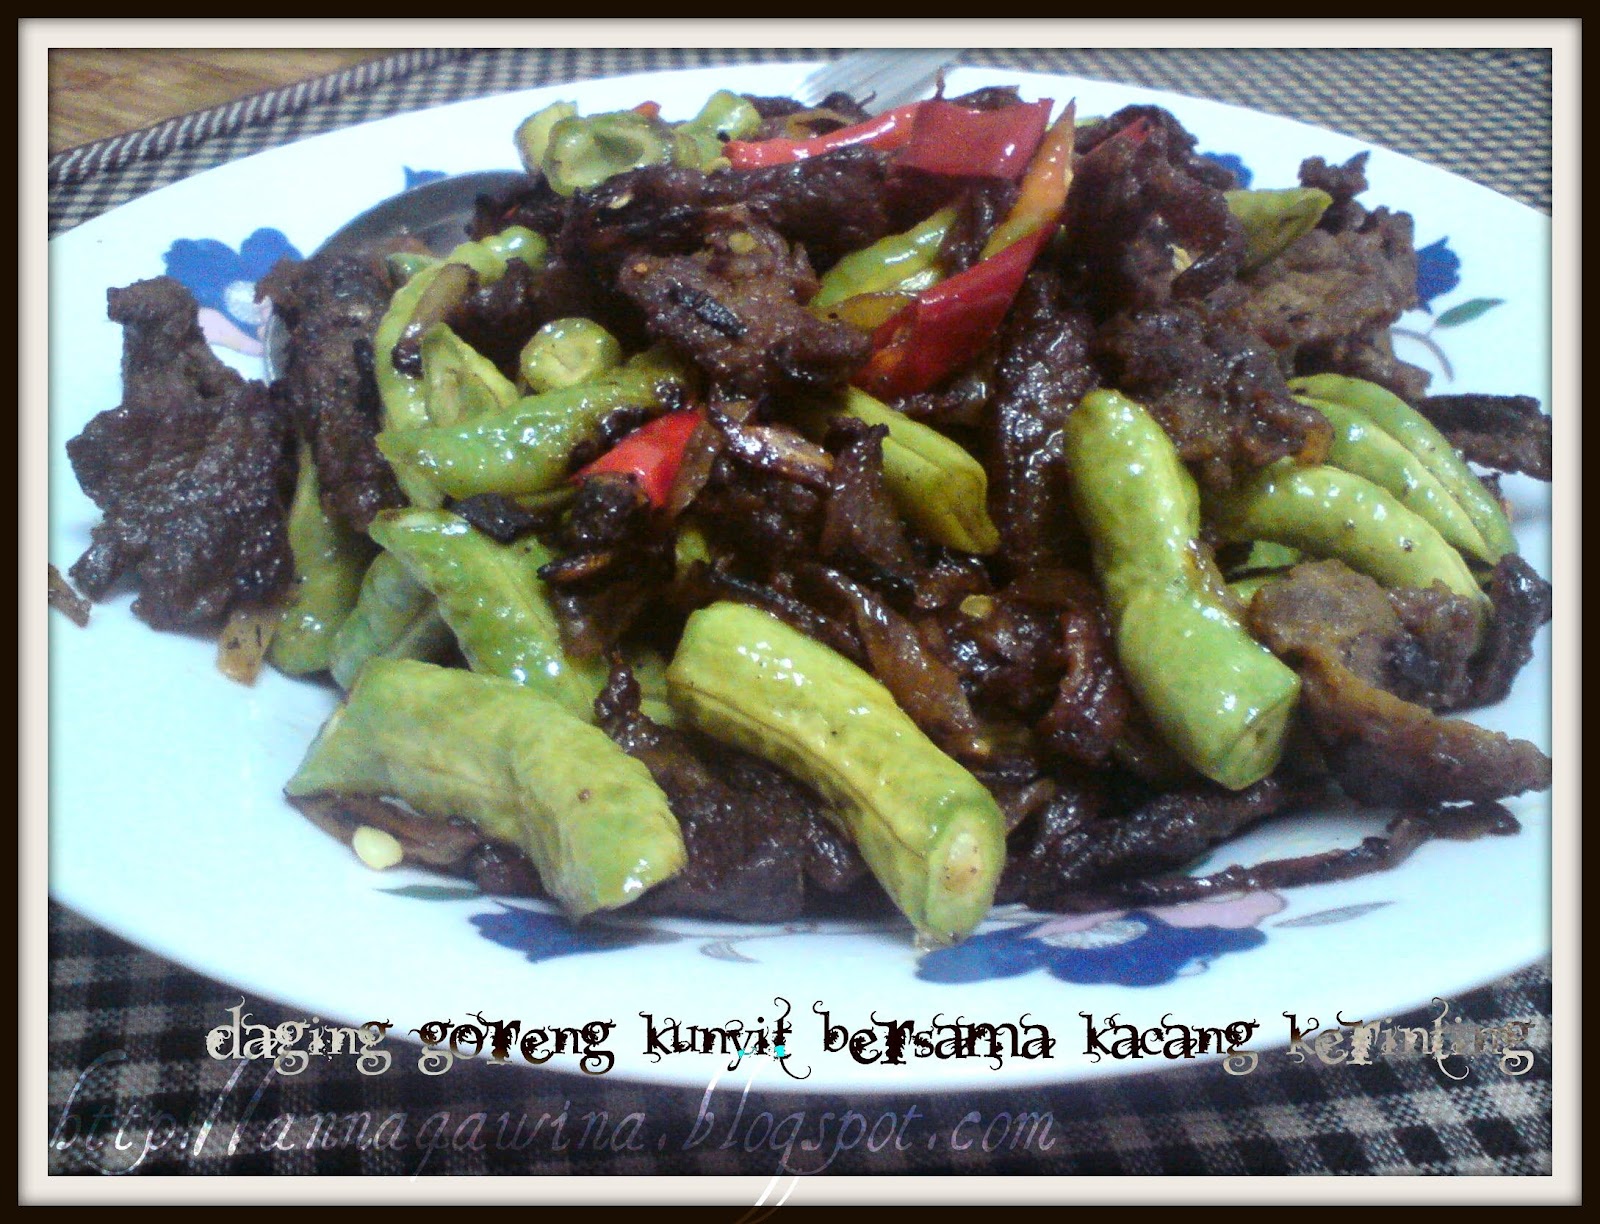 Resepi Daging Goreng Kunyit Ala Kelantan - Hallowef